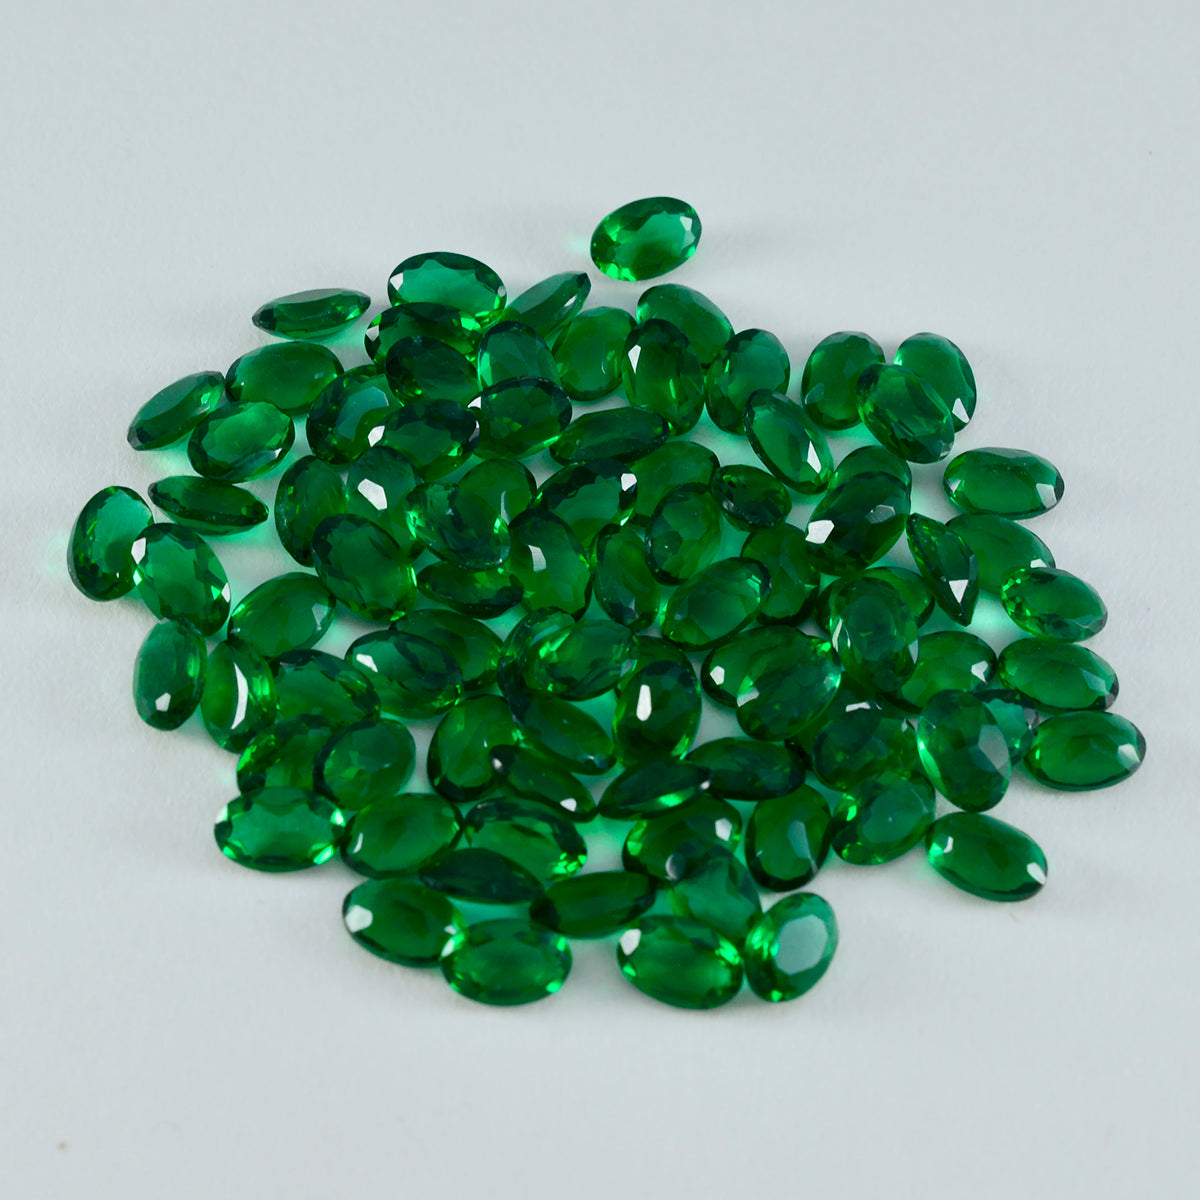 Riyogems 1 pieza Esmeralda verde CZ facetada 4x6mm forma ovalada hermosas gemas sueltas de calidad